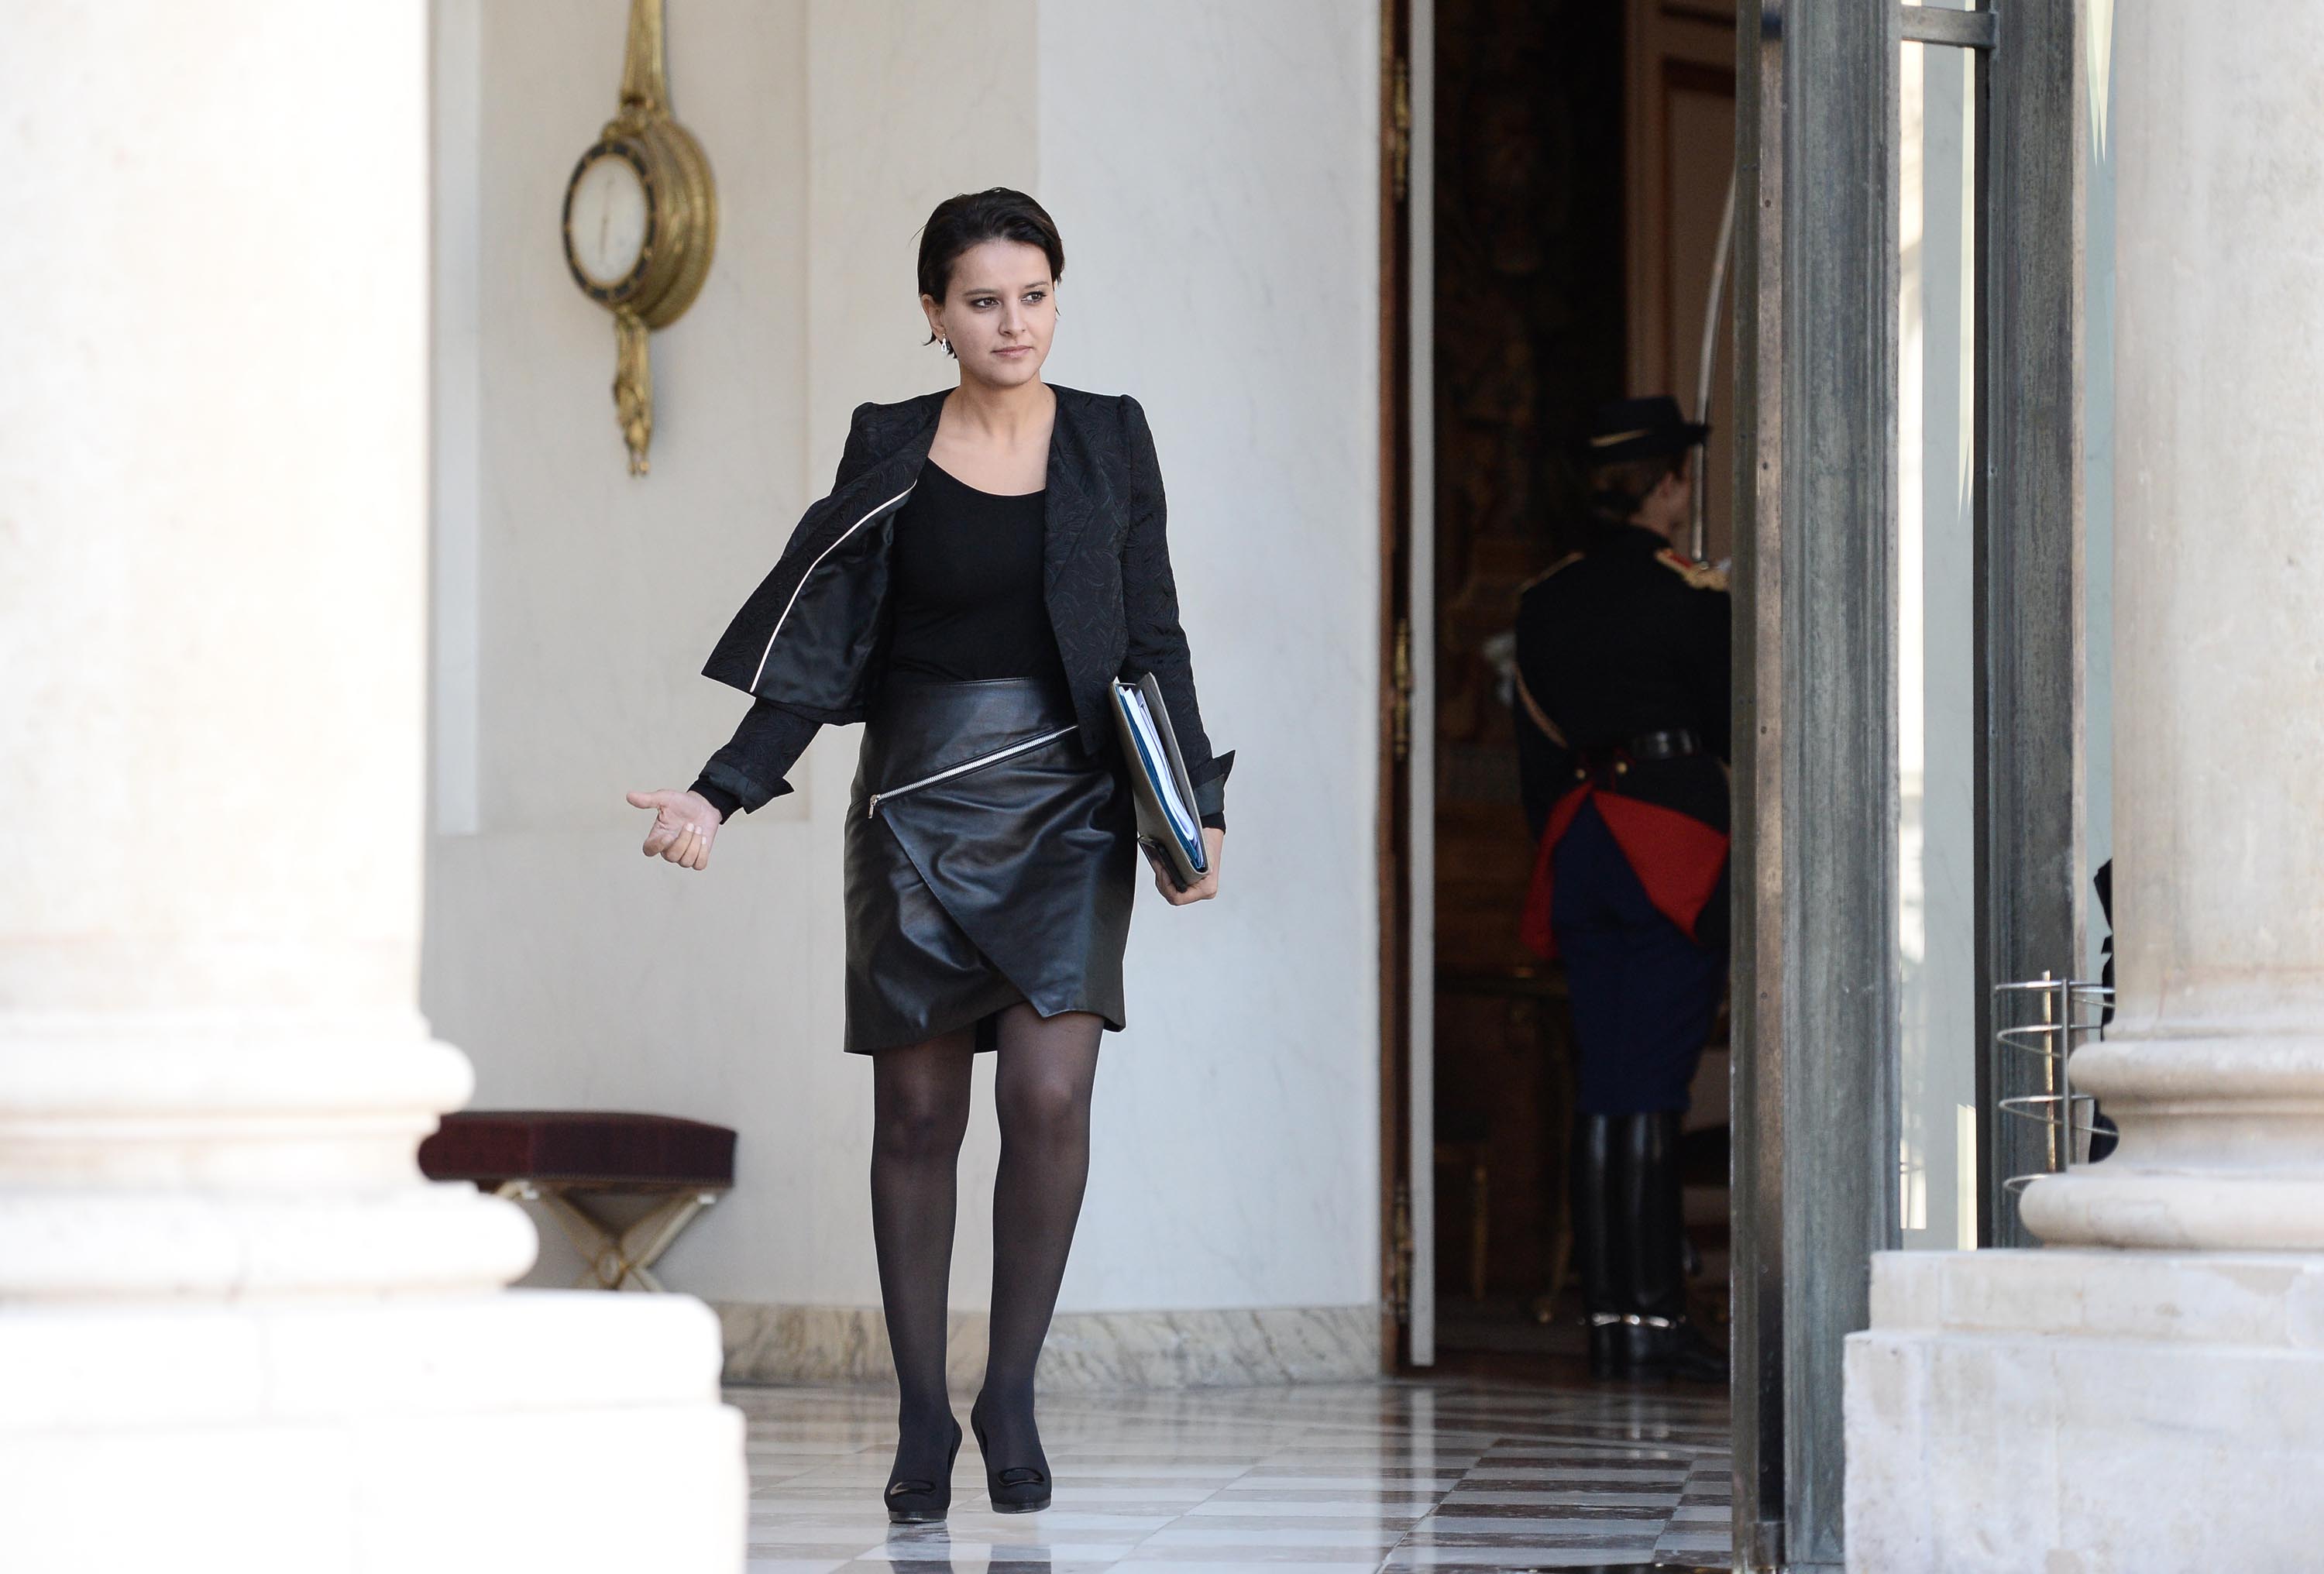 Najat Vallaud-Belkacem walks out of the Elysee presidential palace